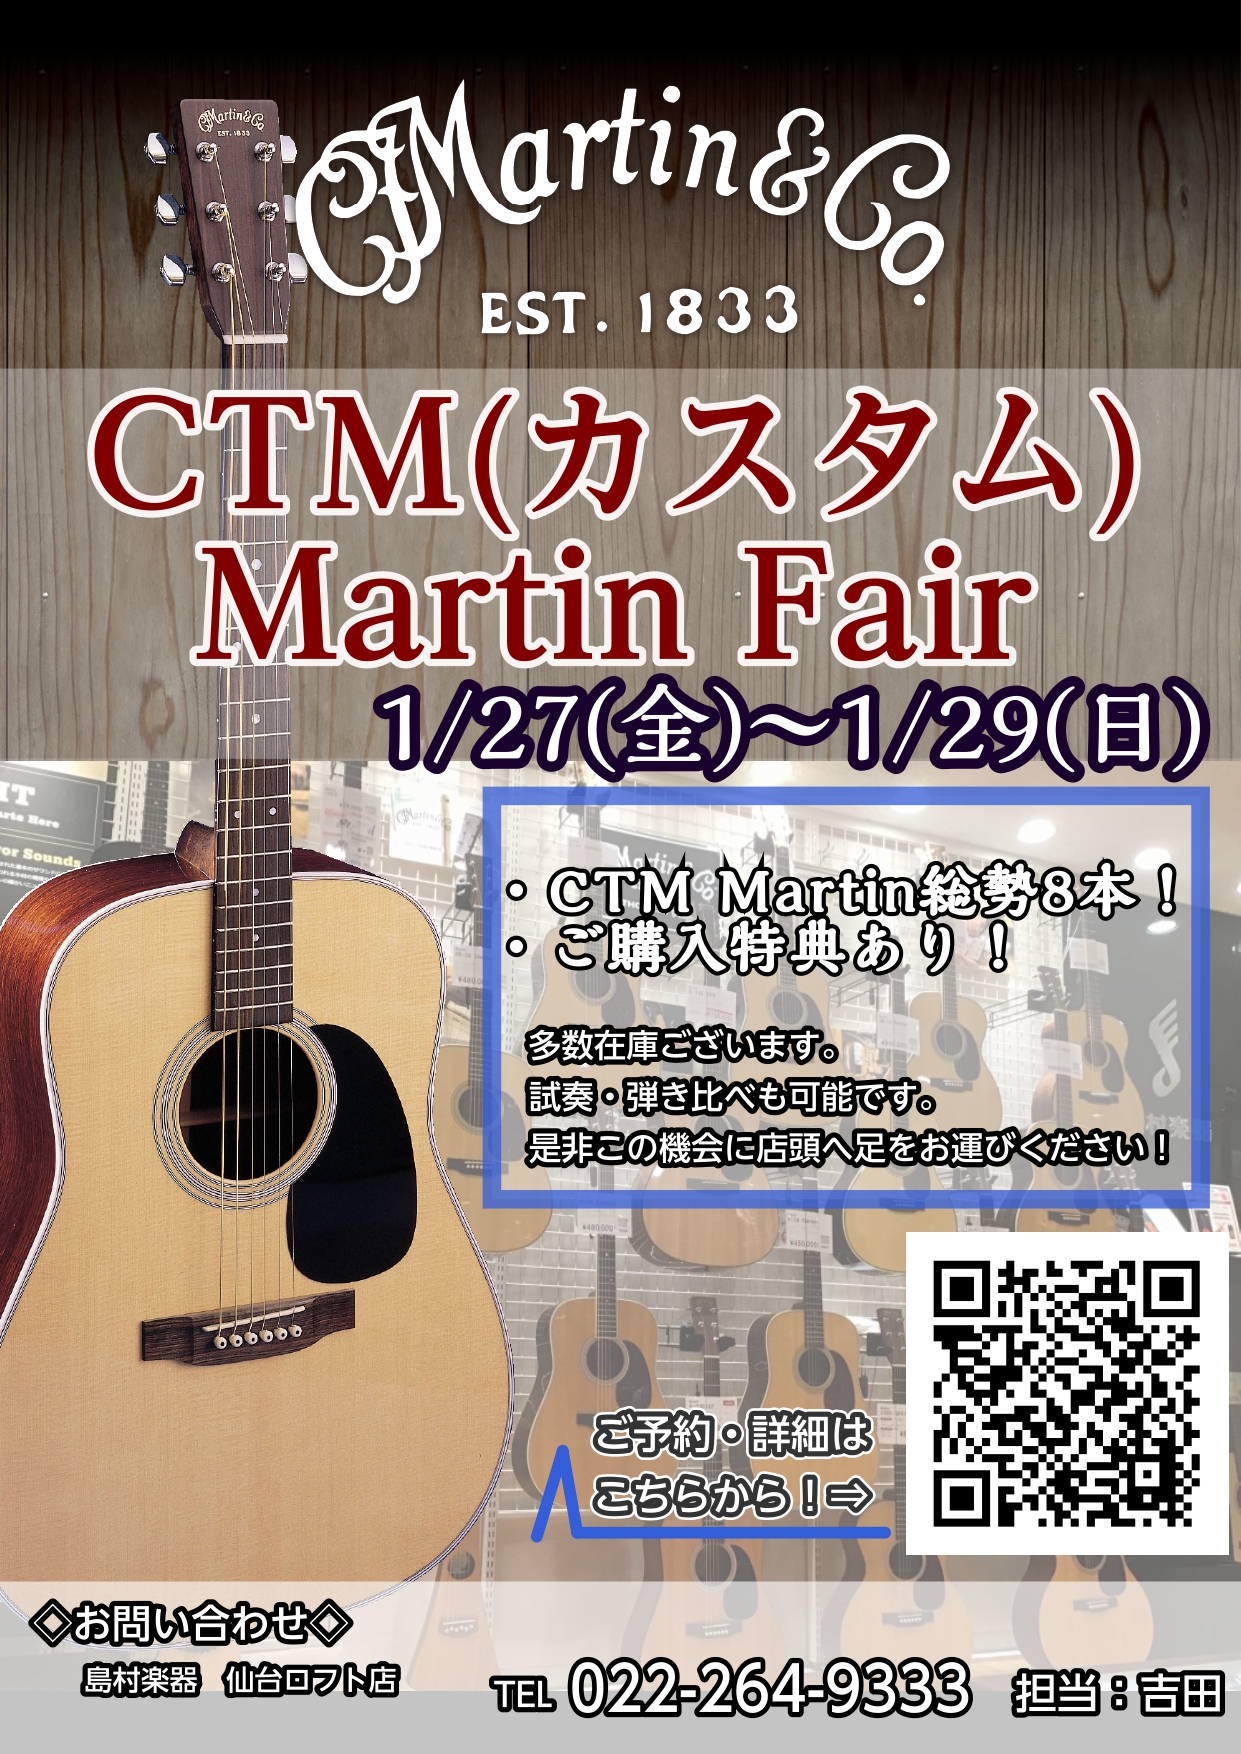 Martinファンの皆さまこんにちは。仙台ロフト店Martin担当の吉田(ヨシダ)です。 1/26(金)～1/28(日)の期間、「CTM(カスタム)Martinフェア」を開催いたします！期間中8本のCTM(カスタム)Martinを展示します！期間中Martinギターご購入の方には特典もご用意しており […]